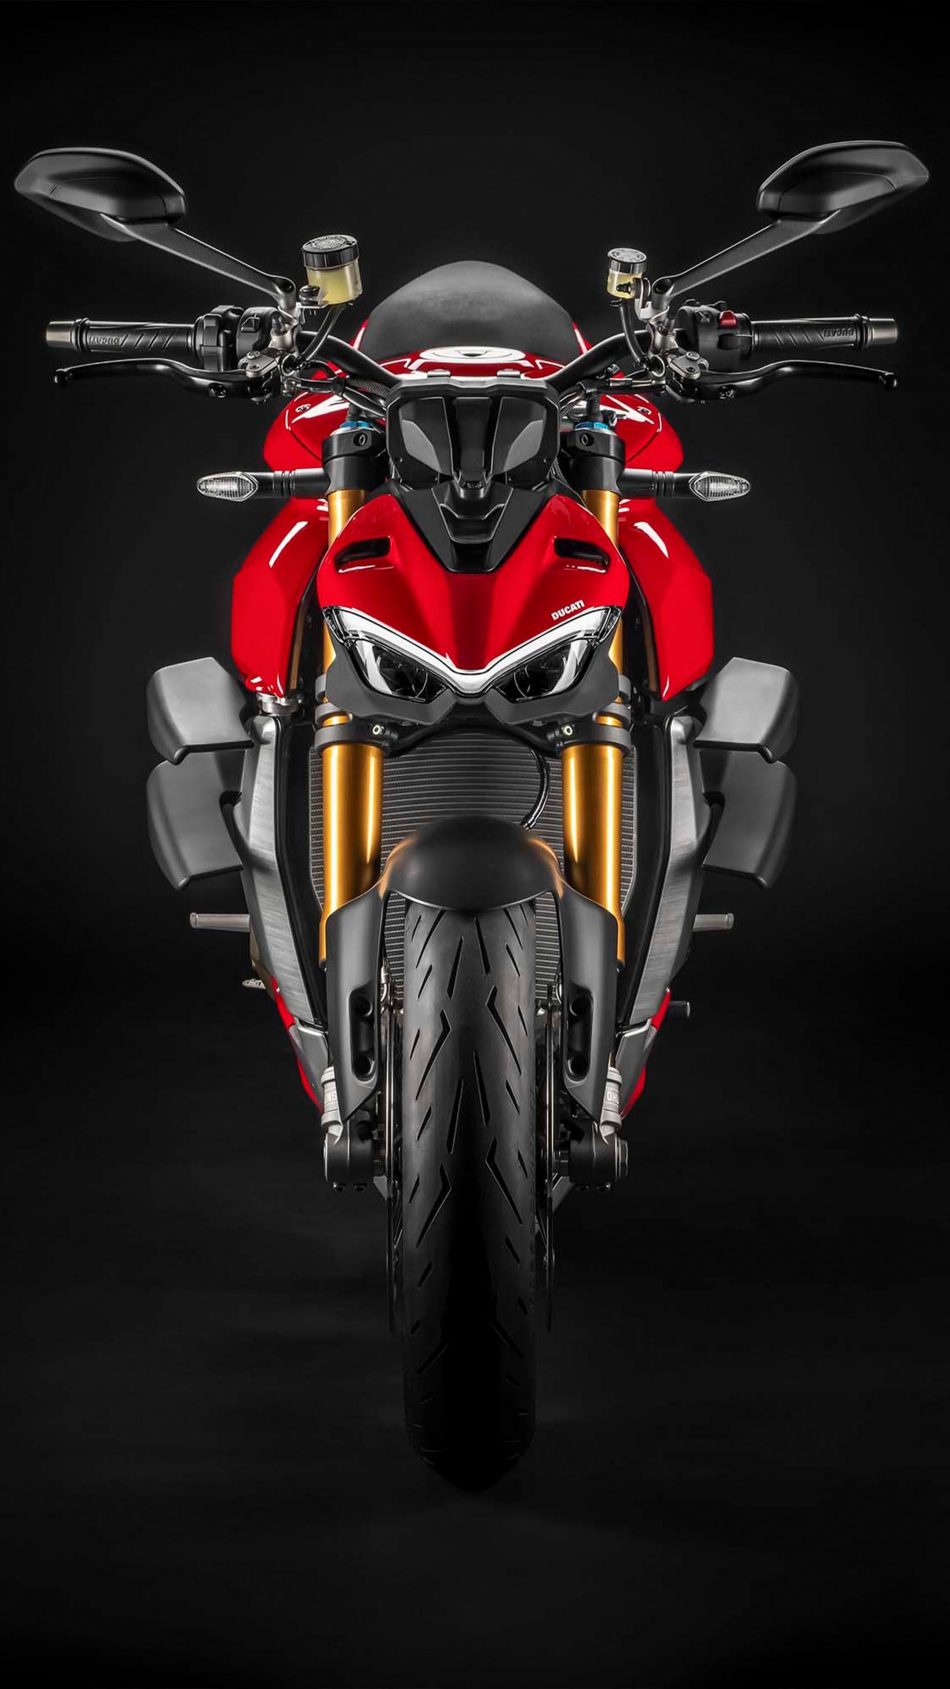 Ducati ra mắt Panigale V4 R tại Ấn Độ với giá gần 2 tỷ đồng  2banhvn